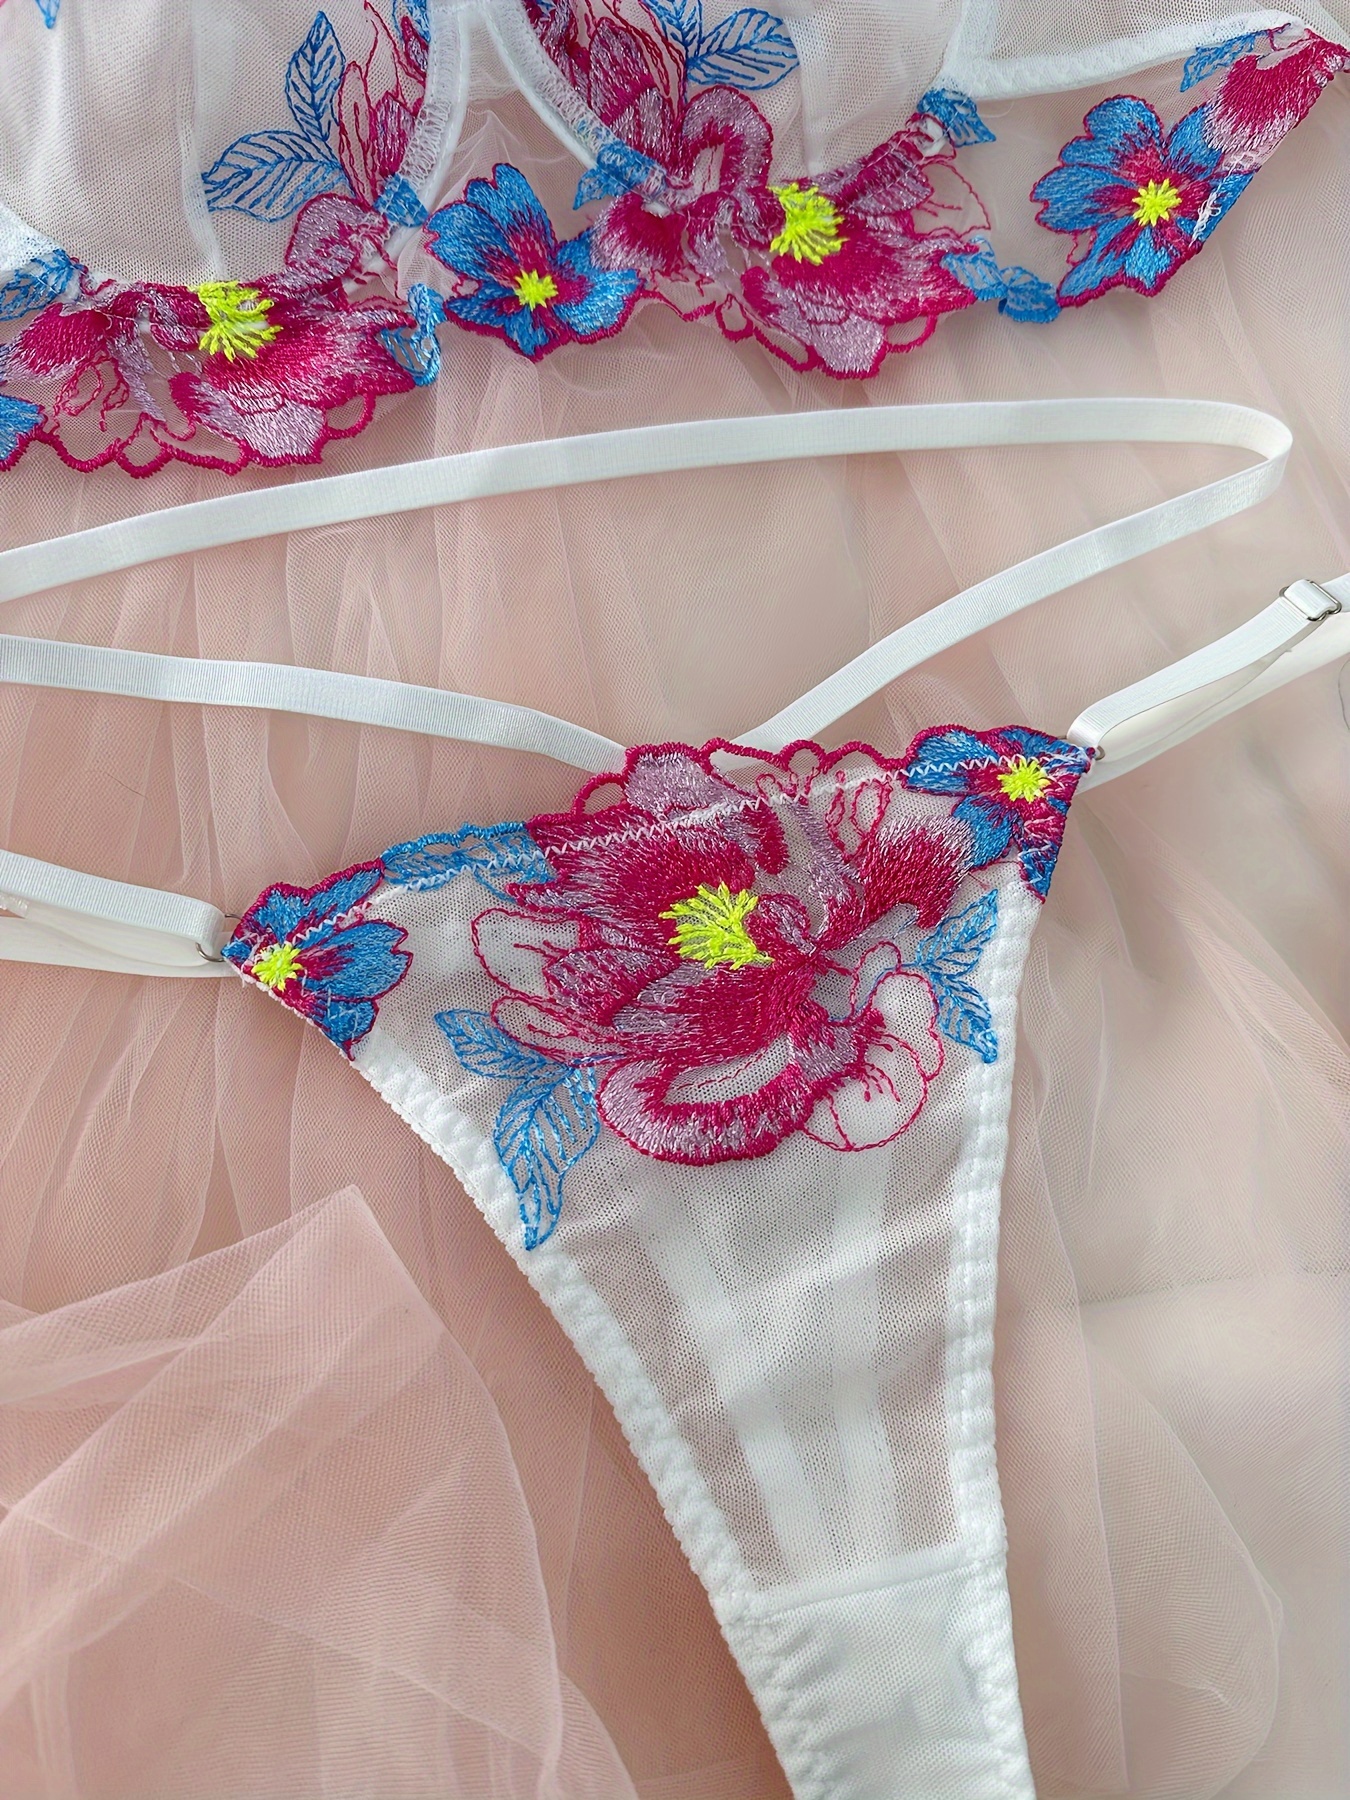 2 Sets Floral Lace Lingerie Set, Push Up Bra & Cut Out Thong, Women's Sexy  Lingerie & Underwear